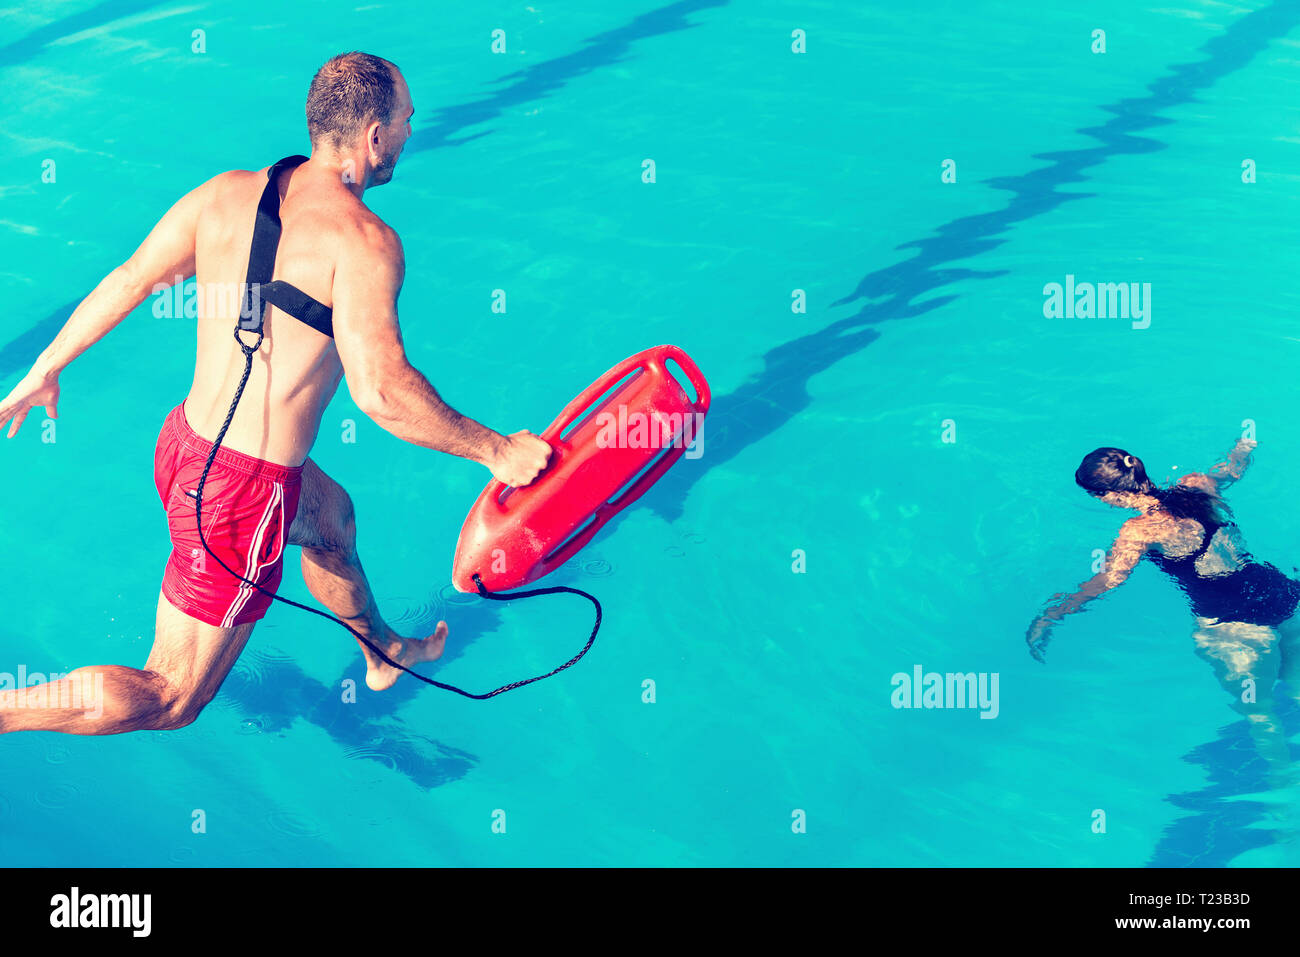 Rettungsschwimmer Rescue Kurs - Rettungsschwimmer in Richtung Frau springen. Getönten Bild. Stockfoto